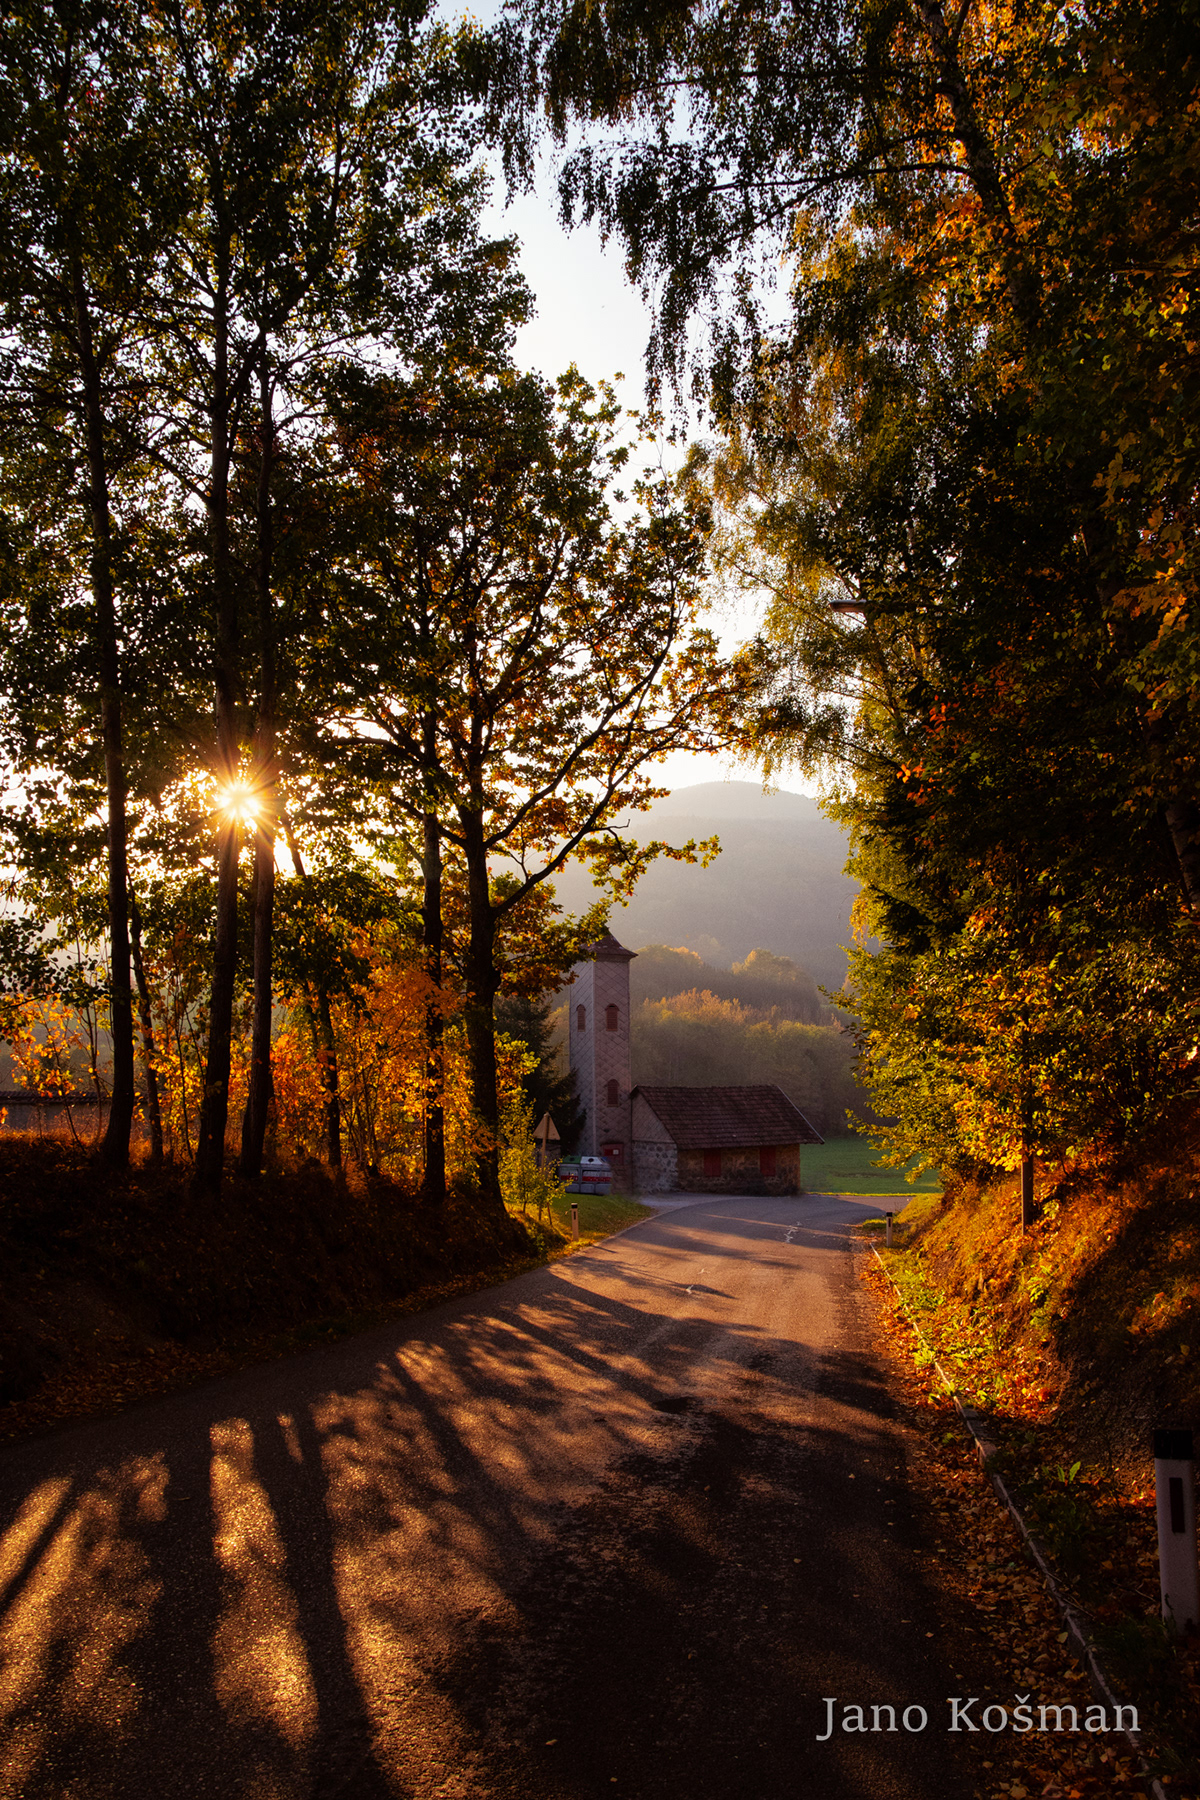 Adobe Portfolio Ysperklamm Janokosman austria österreich Nikon NIKOND5600 Nature Landscape hiking tourism niederösterreich Driuds